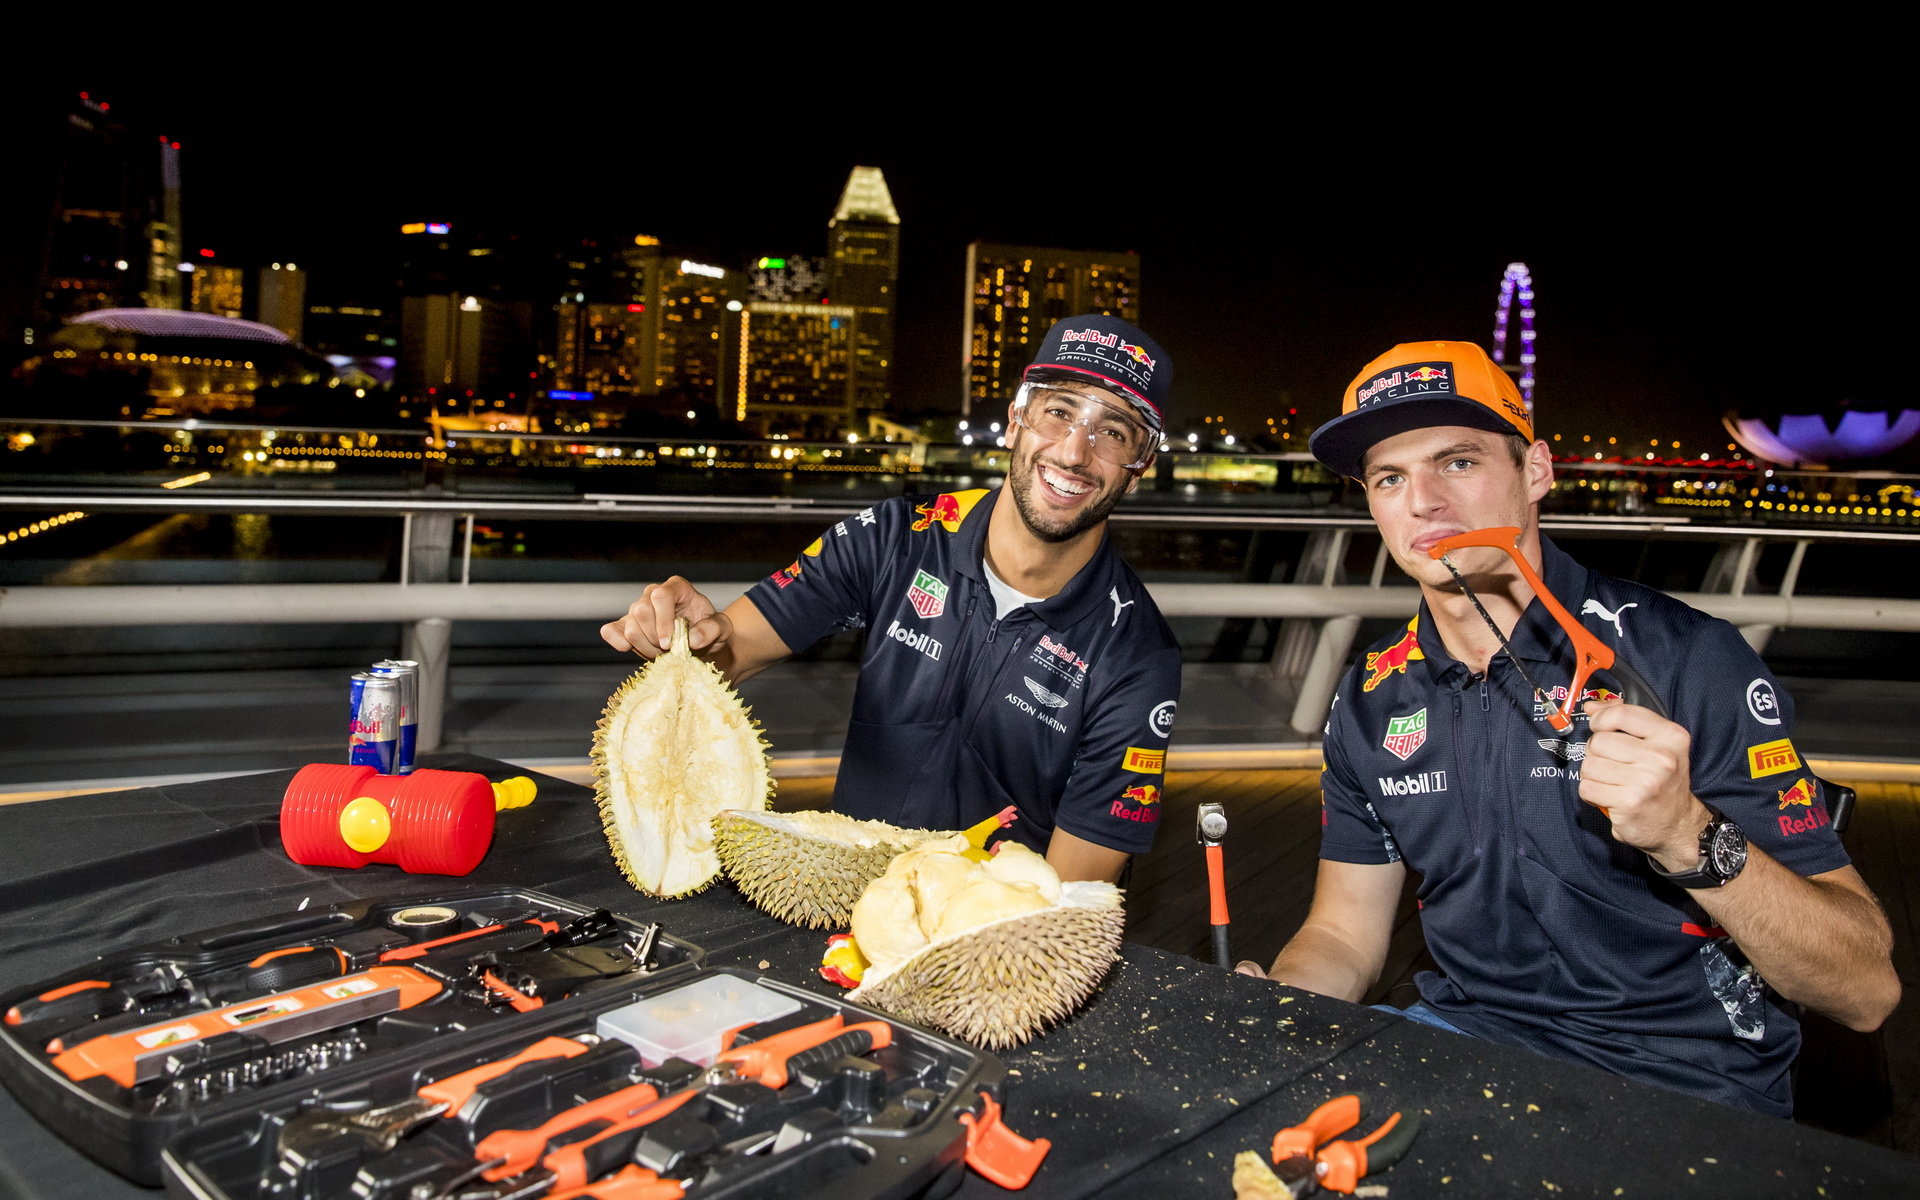 Daniel Ricciardo a Max Verstappen se snaží rozlousknout ovoce "Durian" v Singapuru